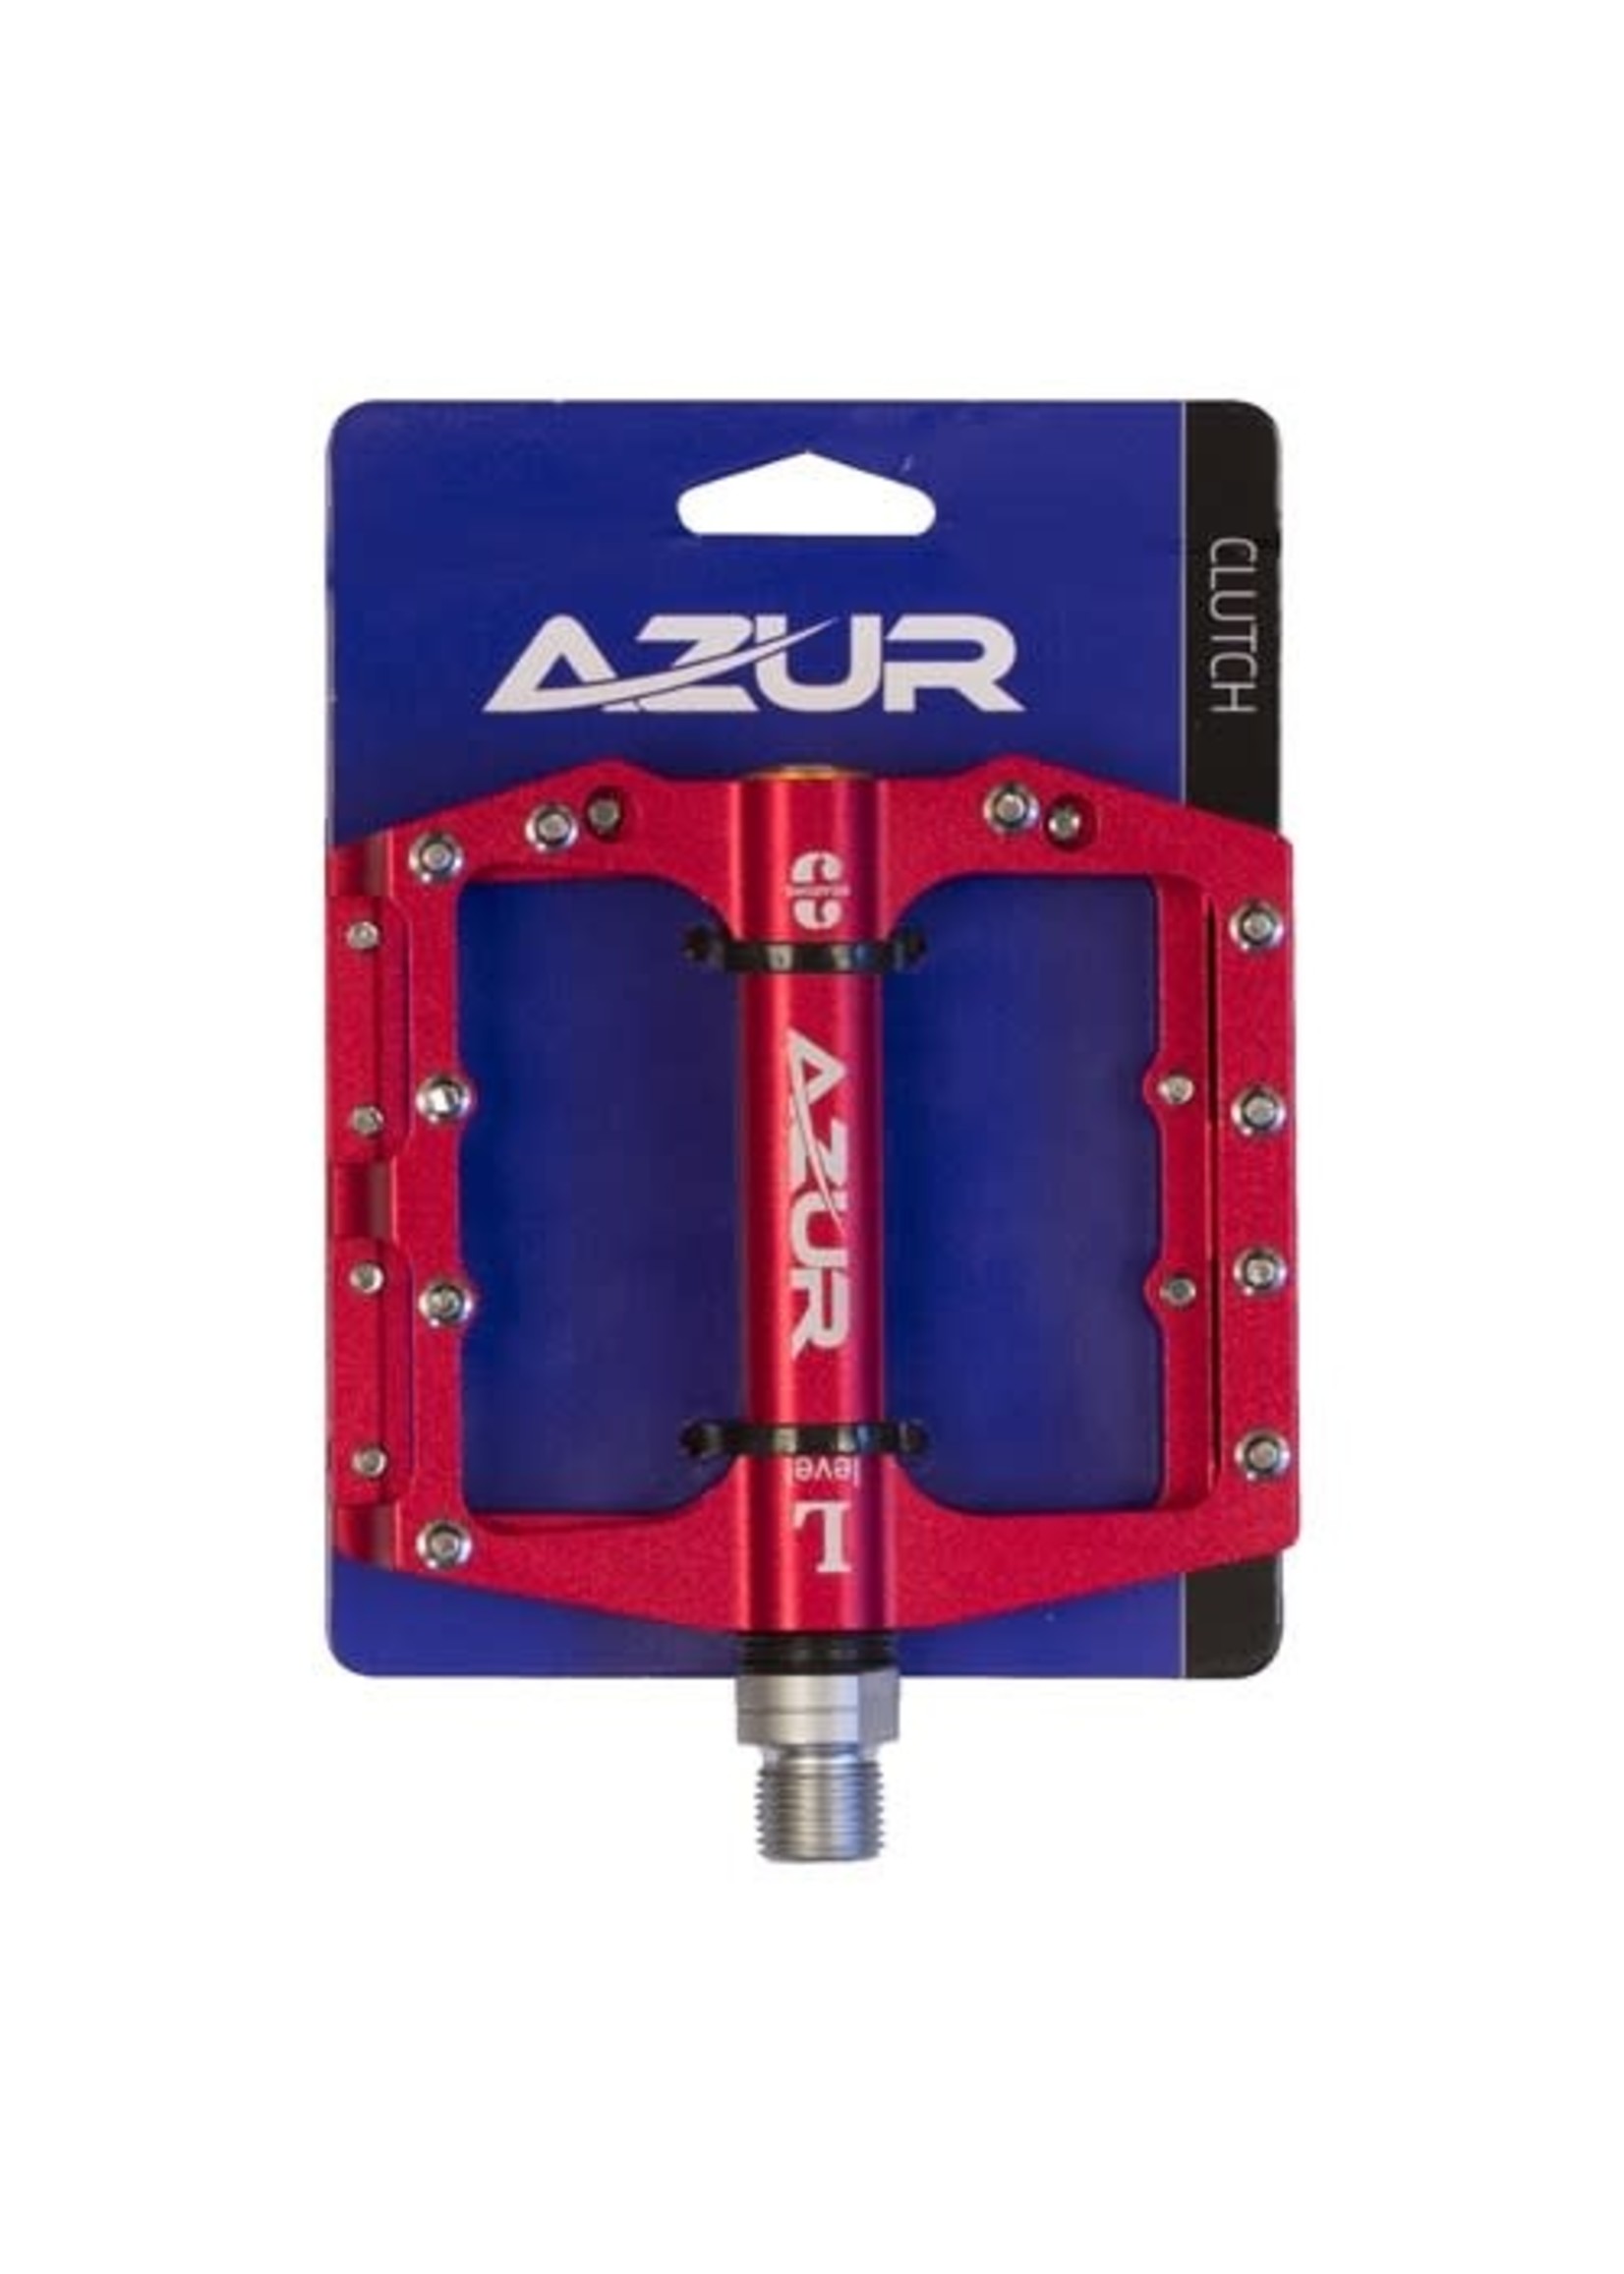 AZUR pedal Clutch Red